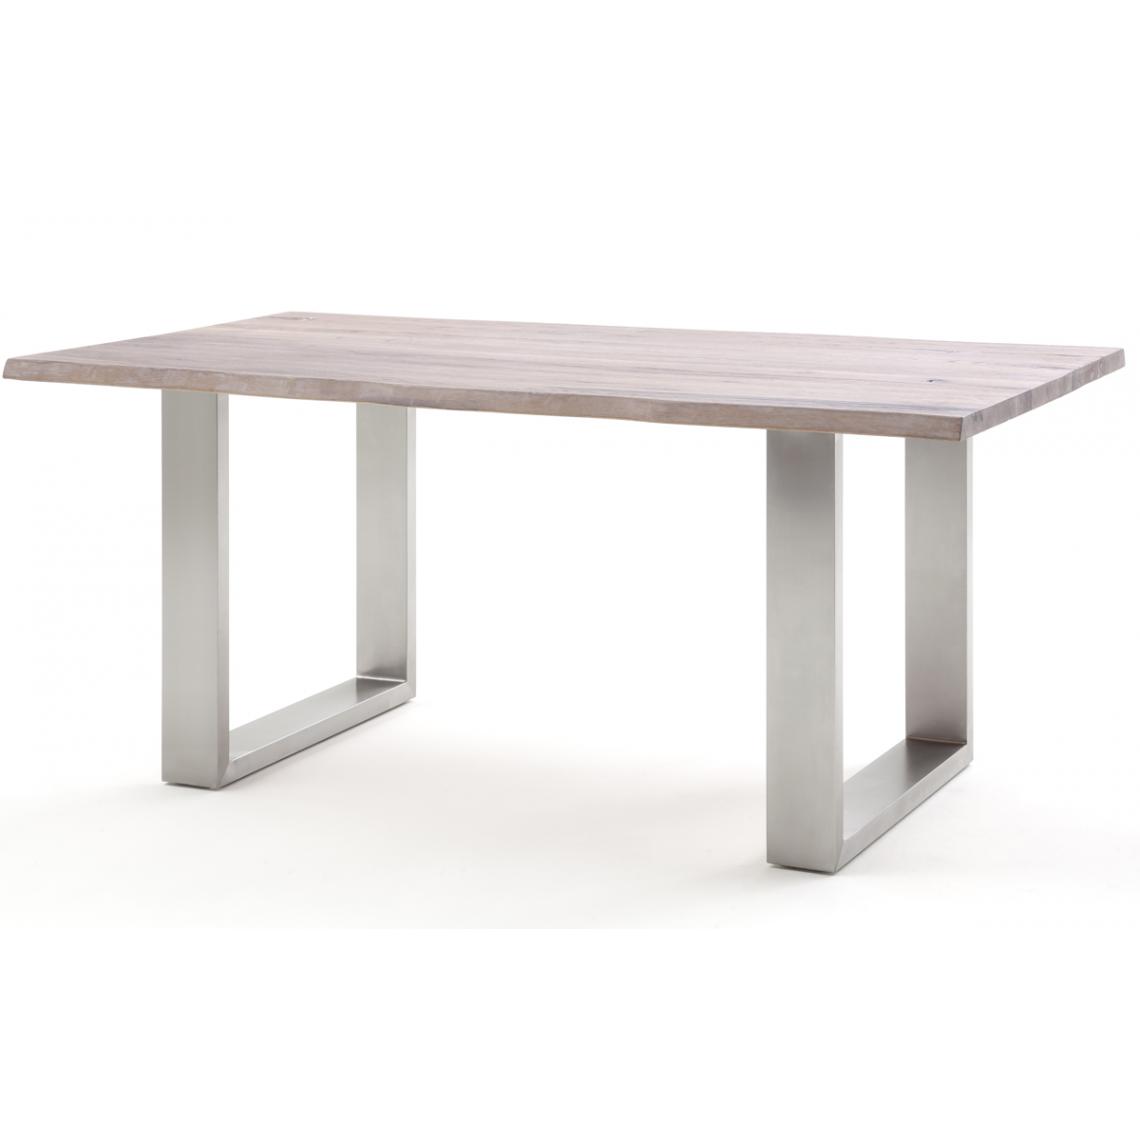 Pegane - Table à manger / table diner en chêne massif teinte chaulé - L.240 x H.77 x P.100 cm -PEGANE- - Tables à manger